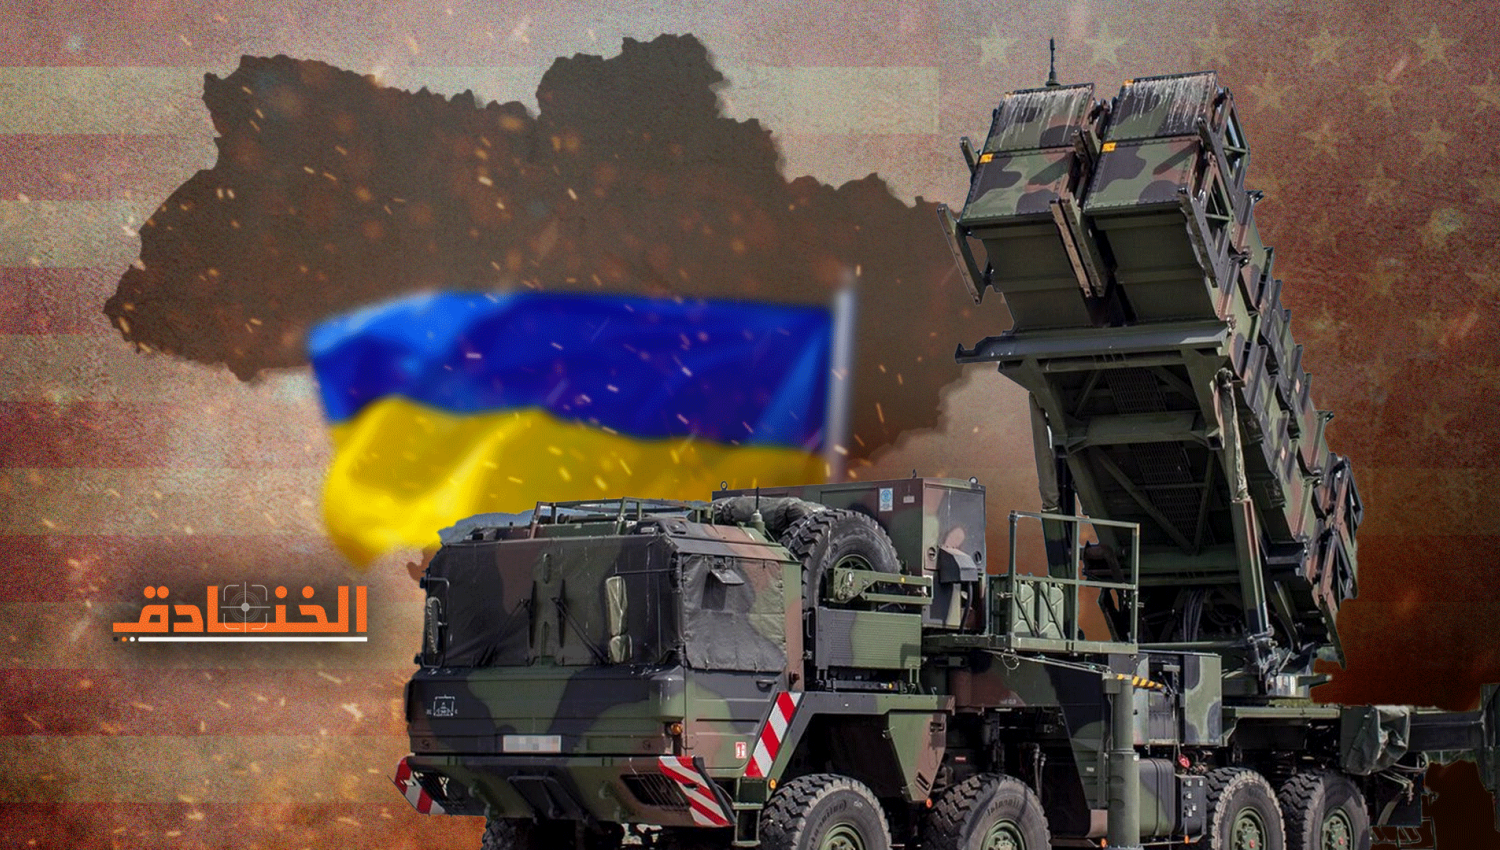 منظومة باتريوت في أوكرانيا: احتمال جيزان - 2 كبير جداً!!